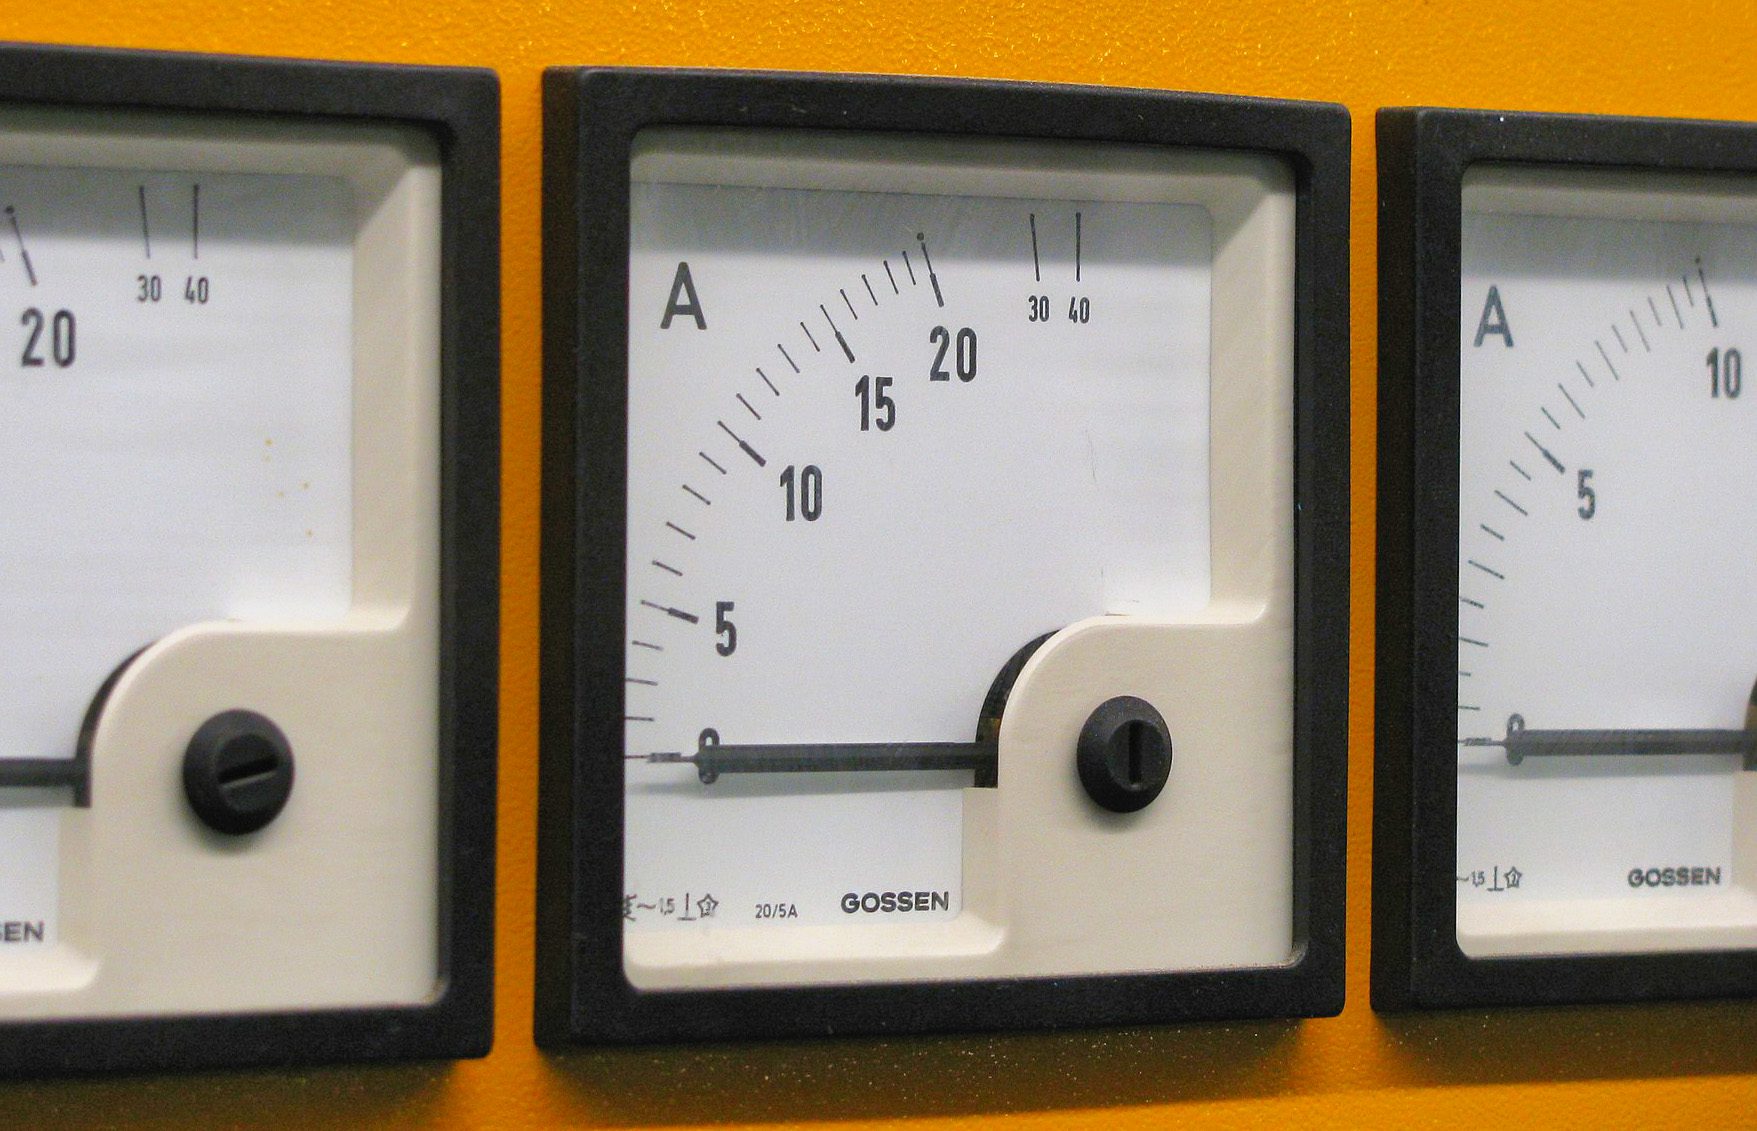 Hier sieht man analoge Amperemeter, welche die Stromstärke bis 40 Ampere anzeigen können, wobei die Skala immer ungenauer wird (Foto: Wikipedia).